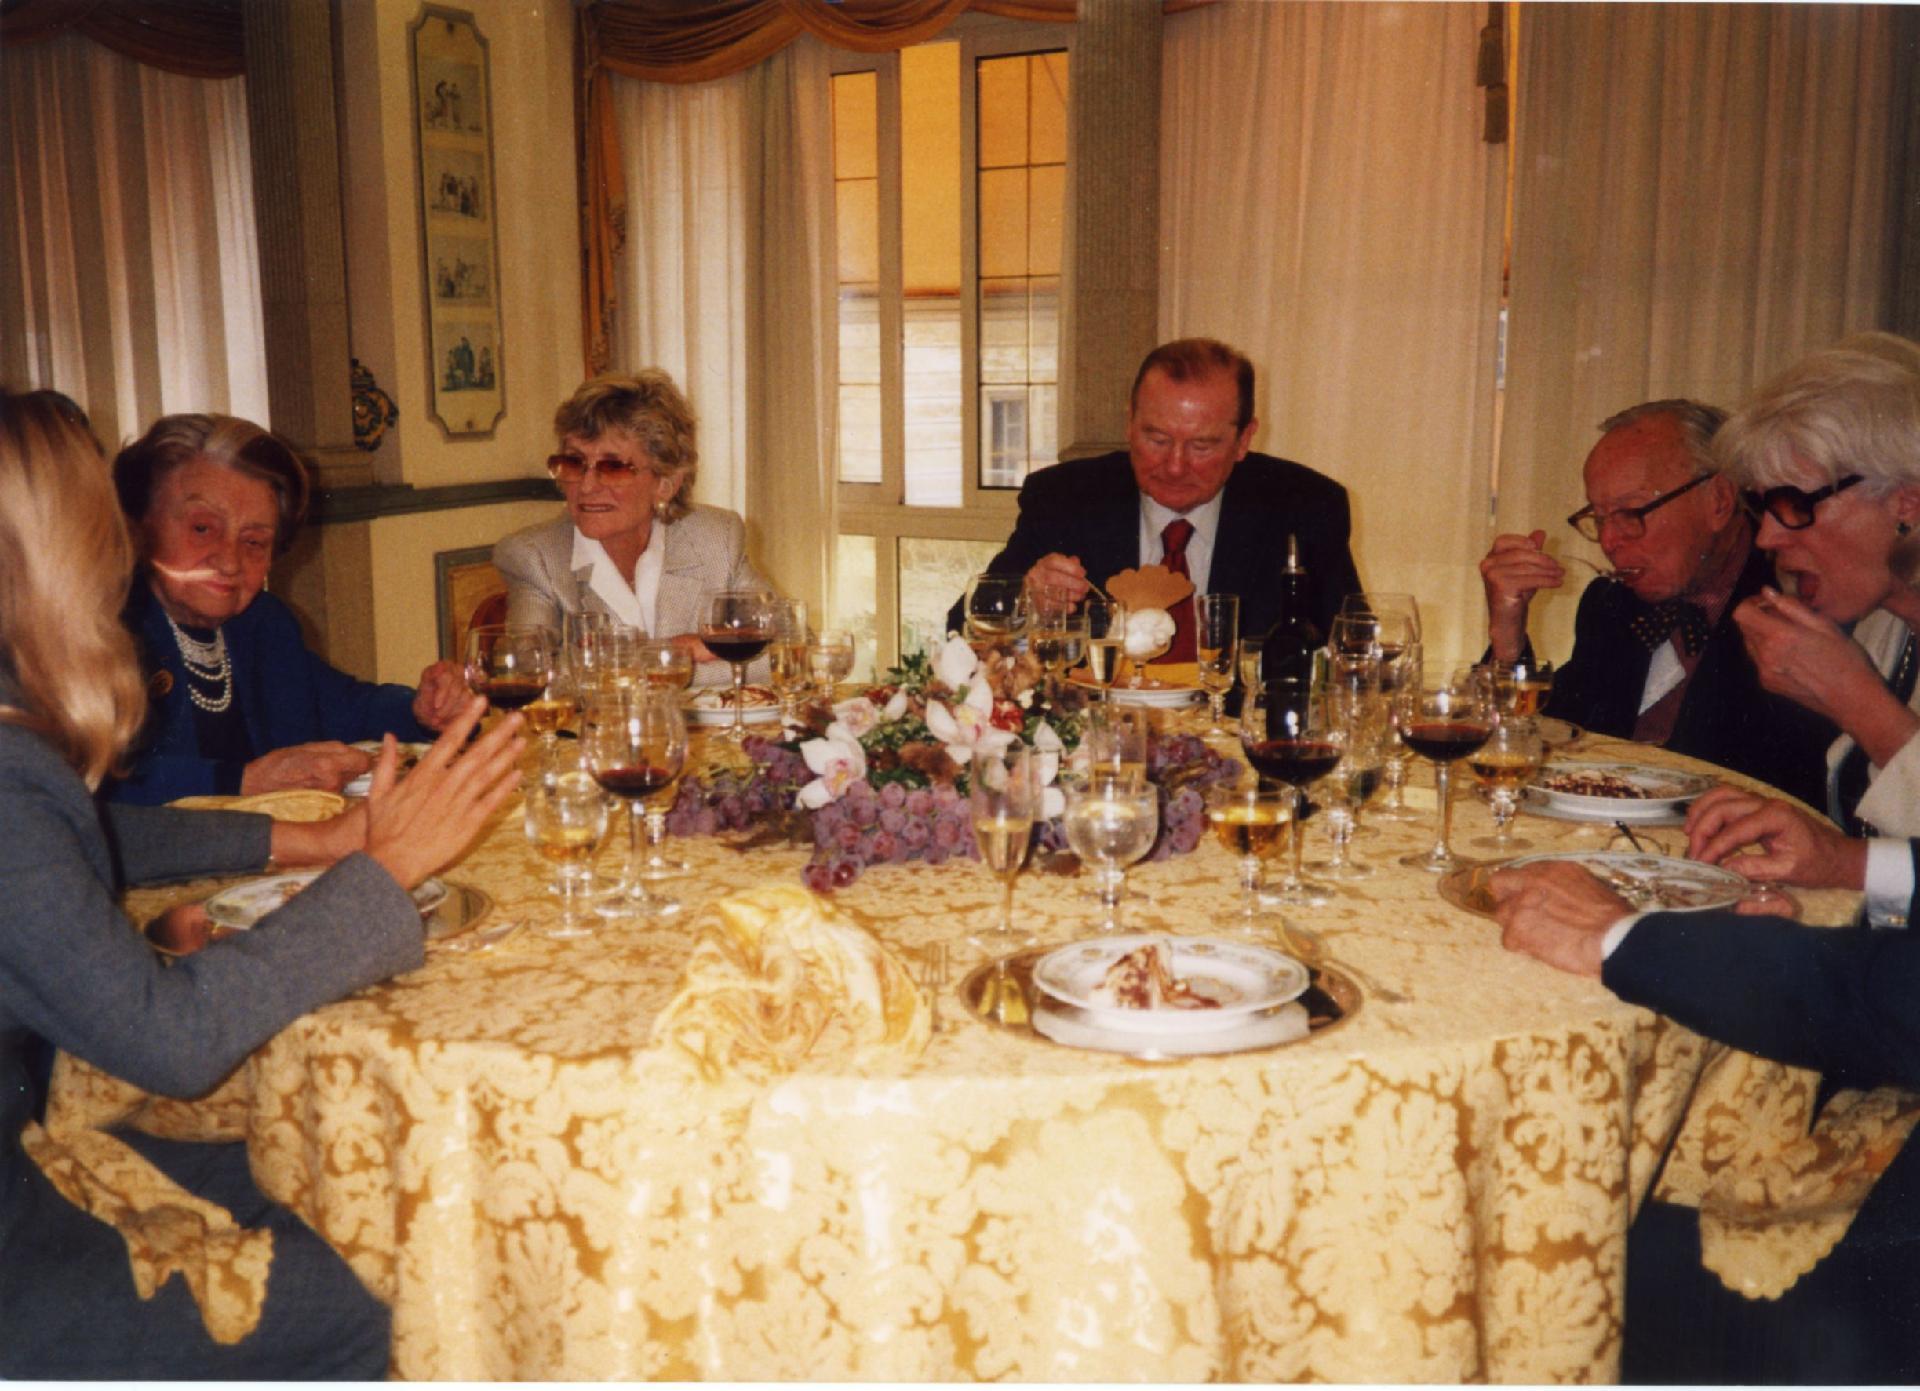 Gianni Bisiach con Micol Fontana, Jean Kennedy Smith, Arthur Schlesinger e la moglie Marian Cannon nel 2003 in occasione della mostra su Kennedy alla Camera dei deputati, a pranzo da Vanni a Roma